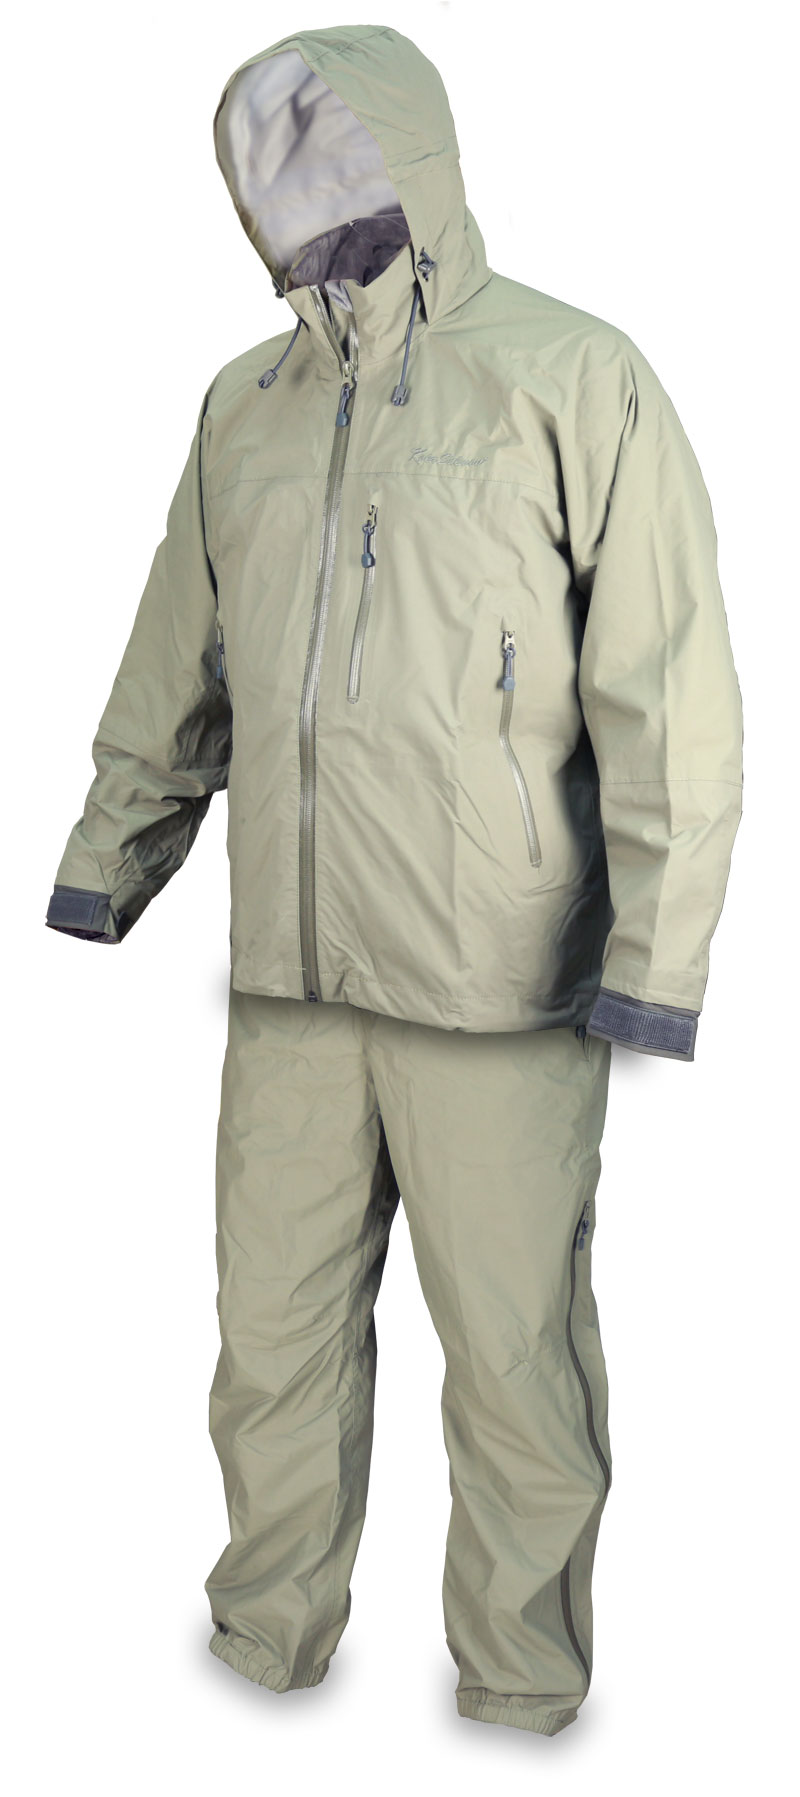 На фото: полный комплект Light Expedition Jacket + Trouser (приобретаются по-отдельности)